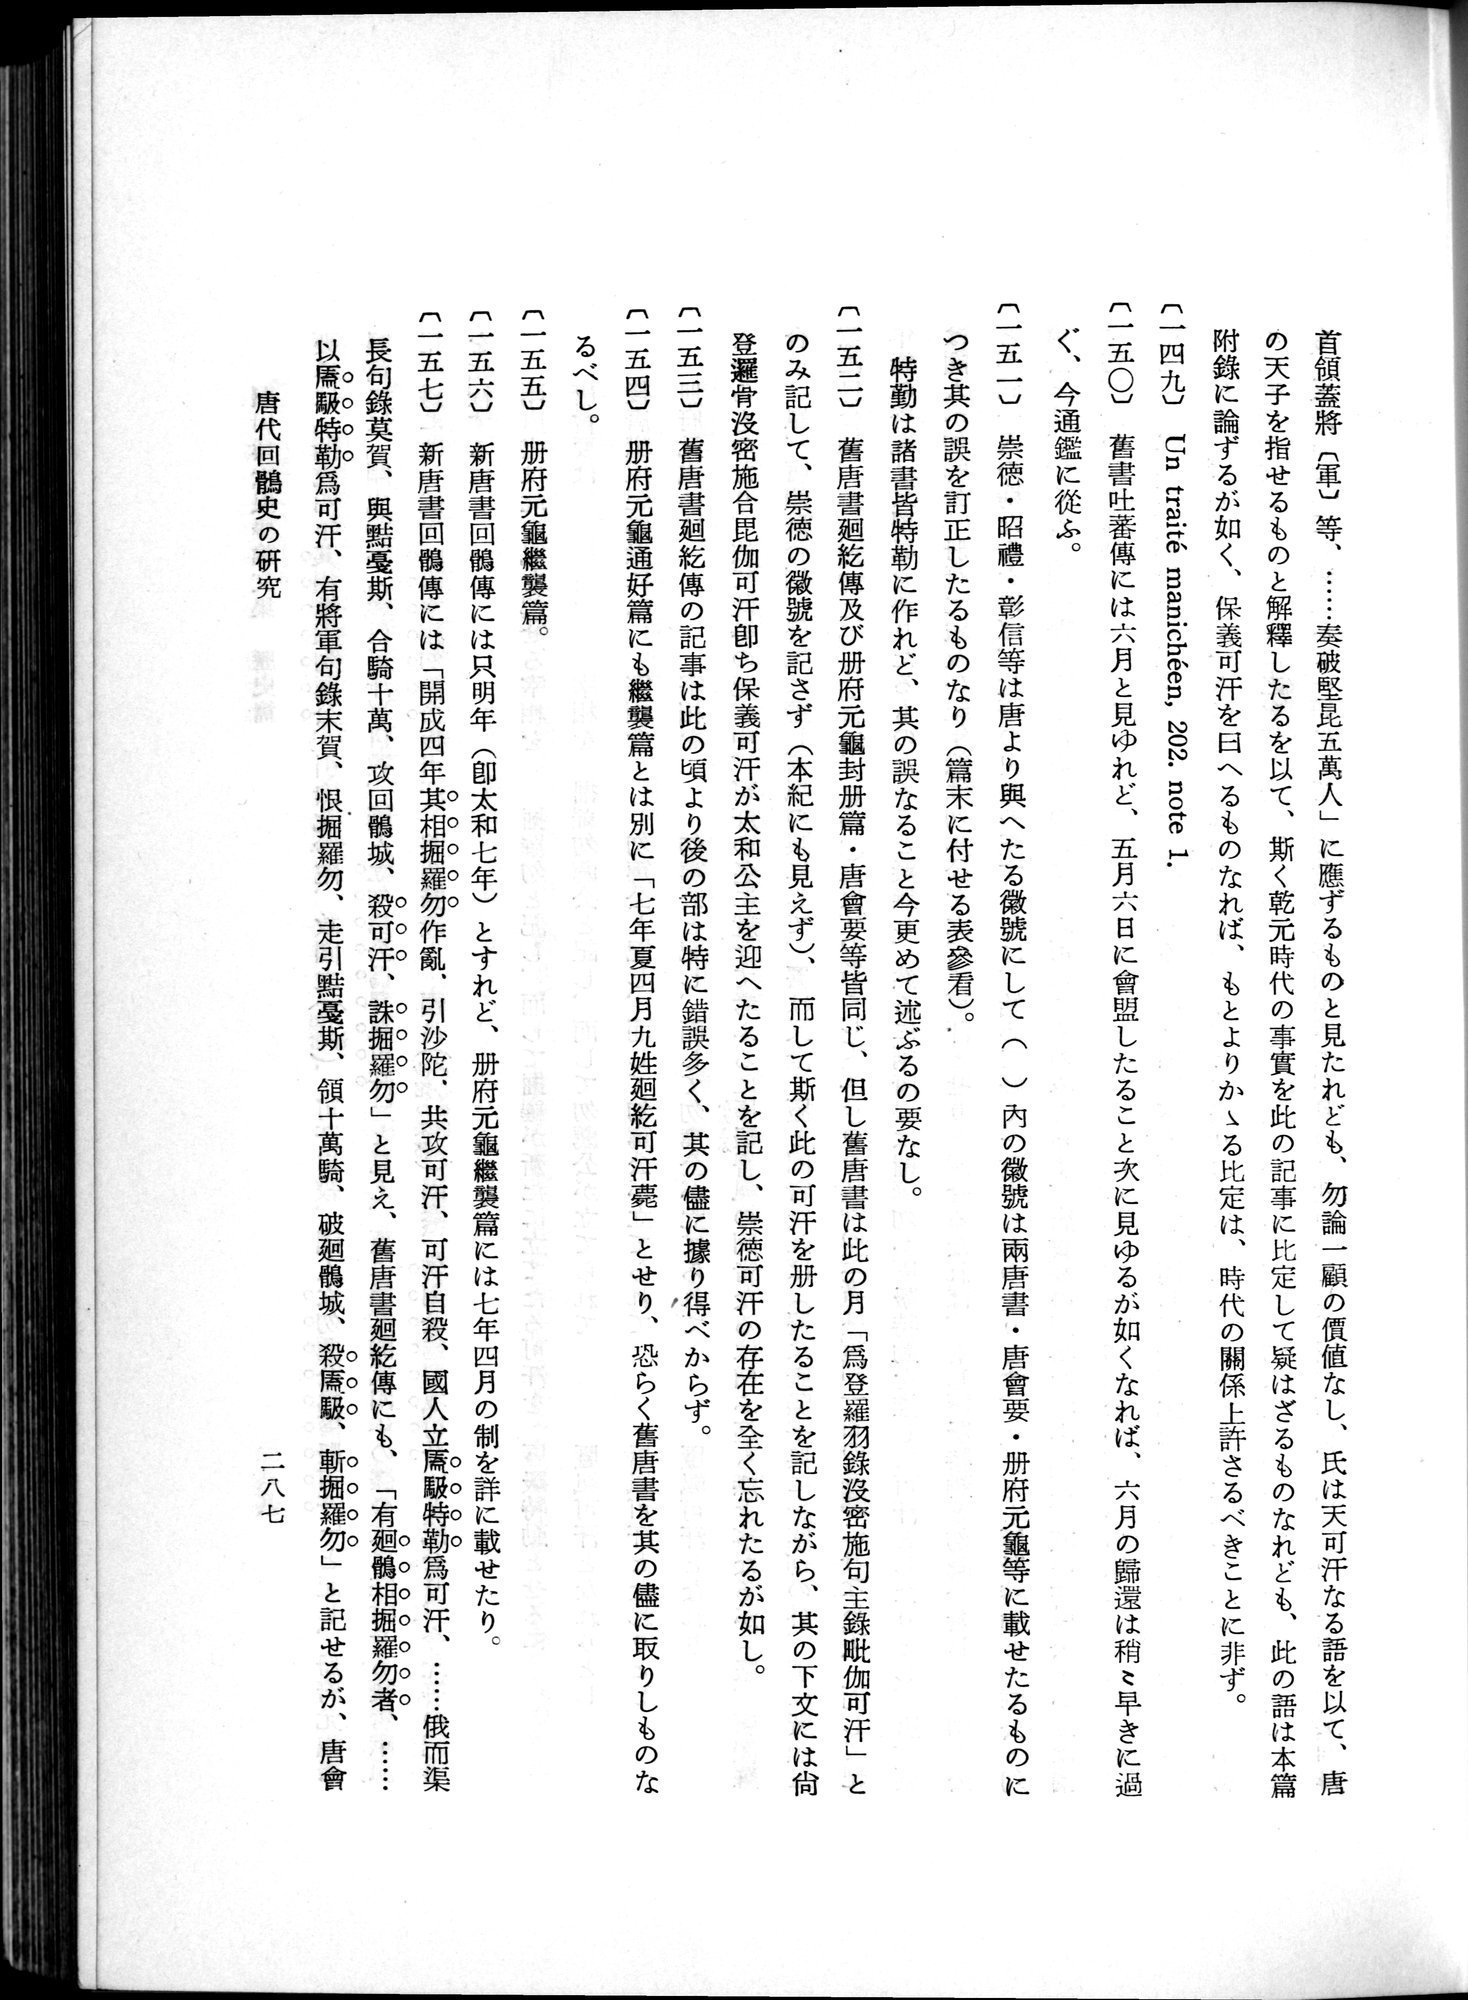 羽田博士史学論文集 : vol.1 / Page 325 (Grayscale High Resolution Image)